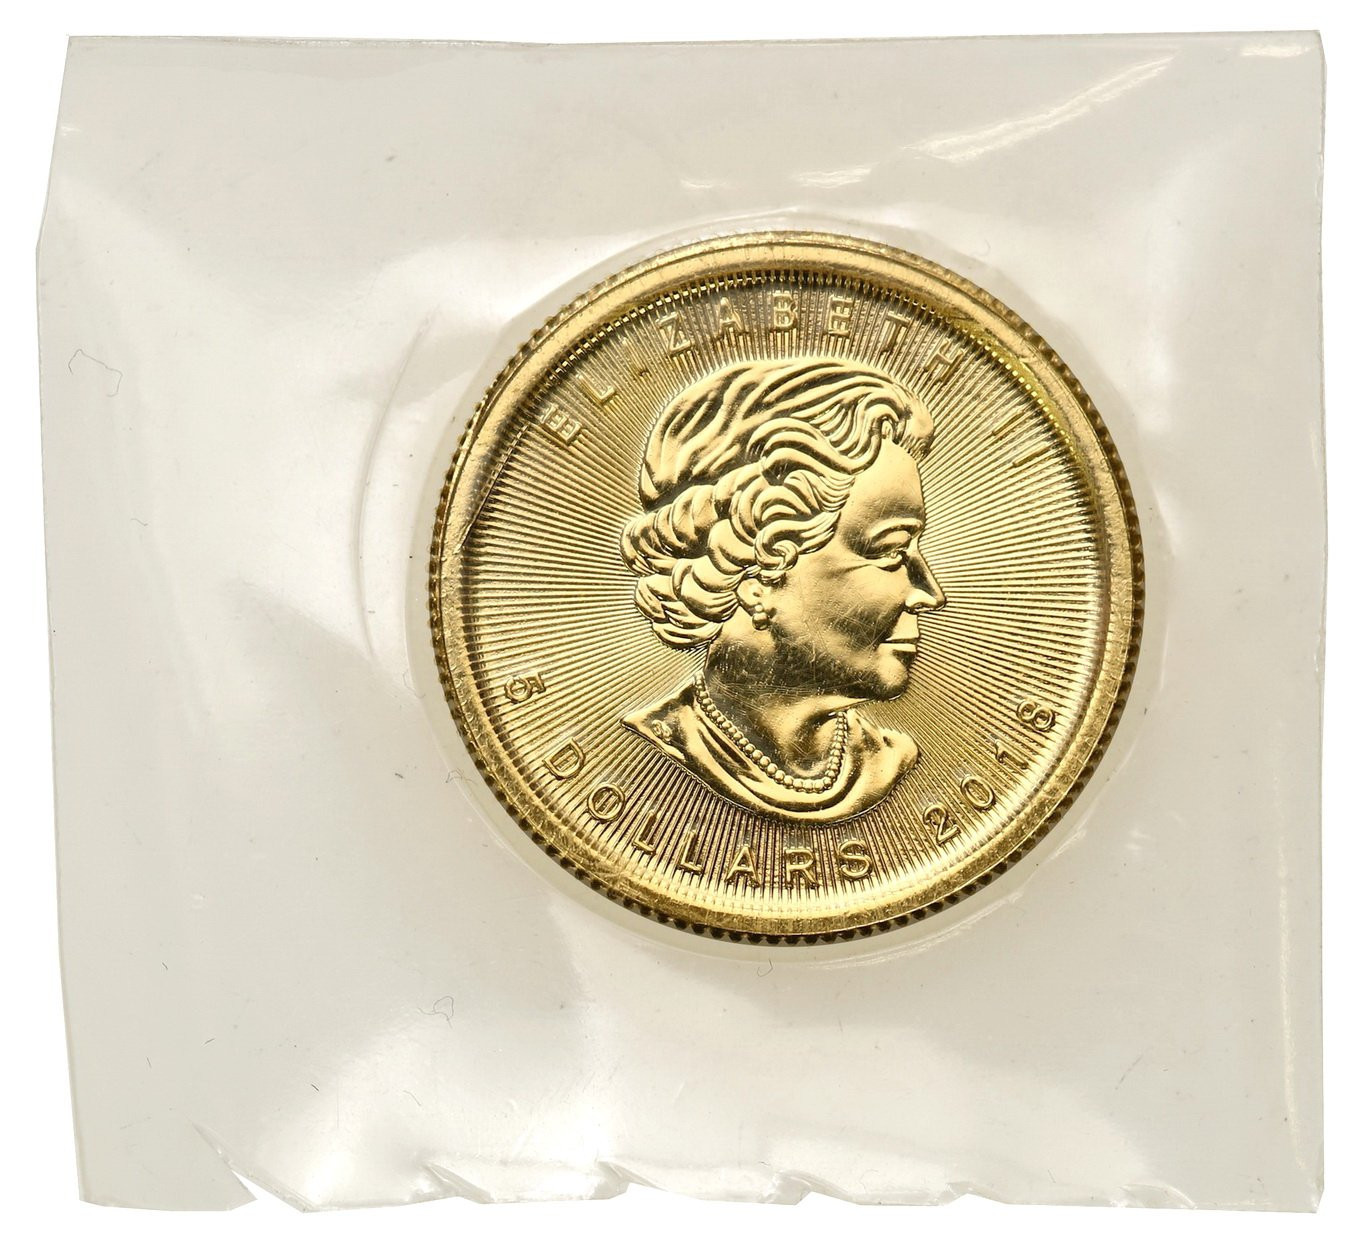 Kanada 5 dolarów 2015 liść klonowy - 1/10 uncji złota